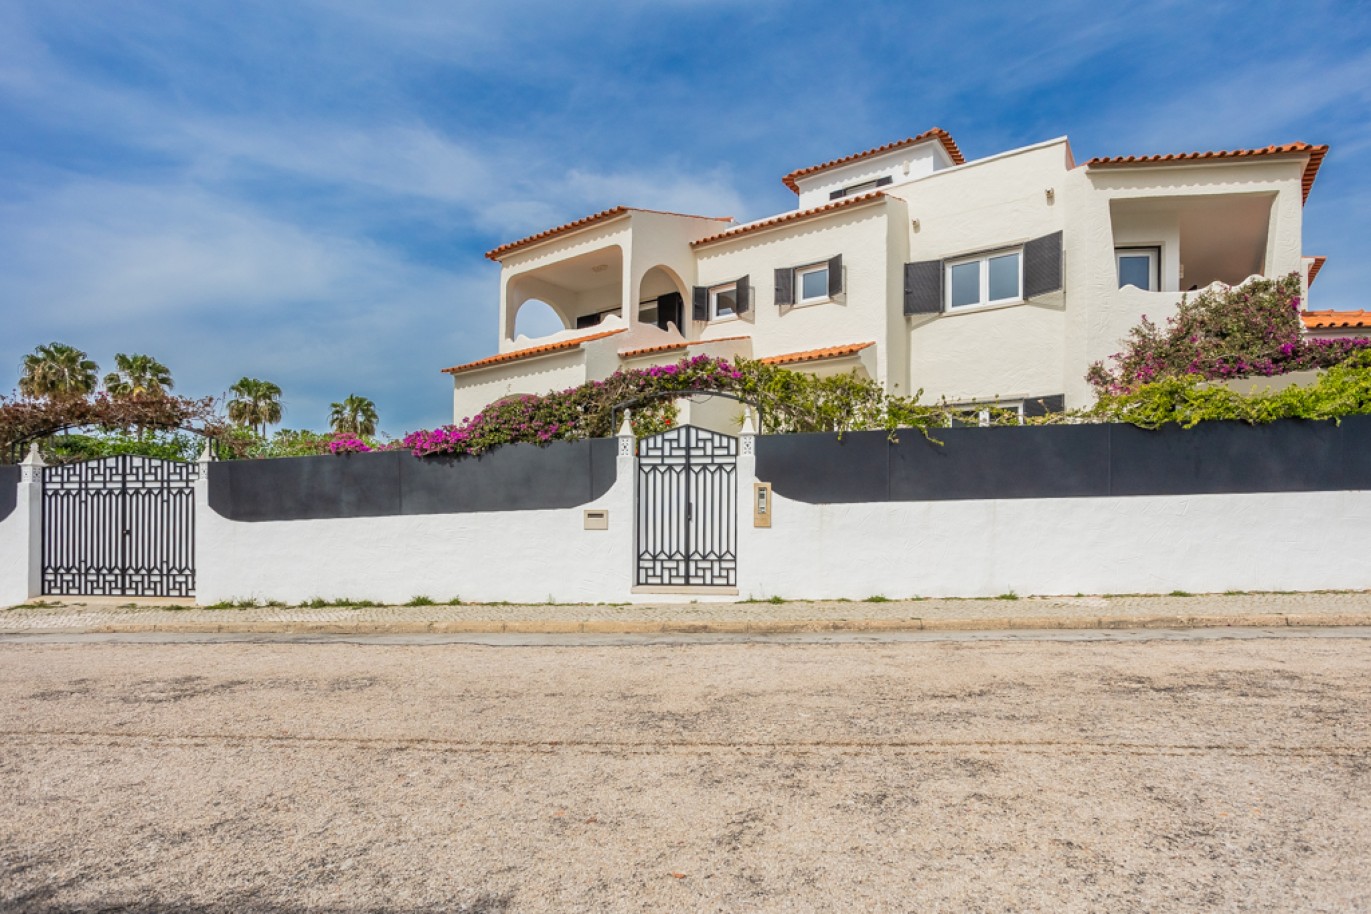 Moradia V7 com piscina, para venda, em Porches, Algarve_256788